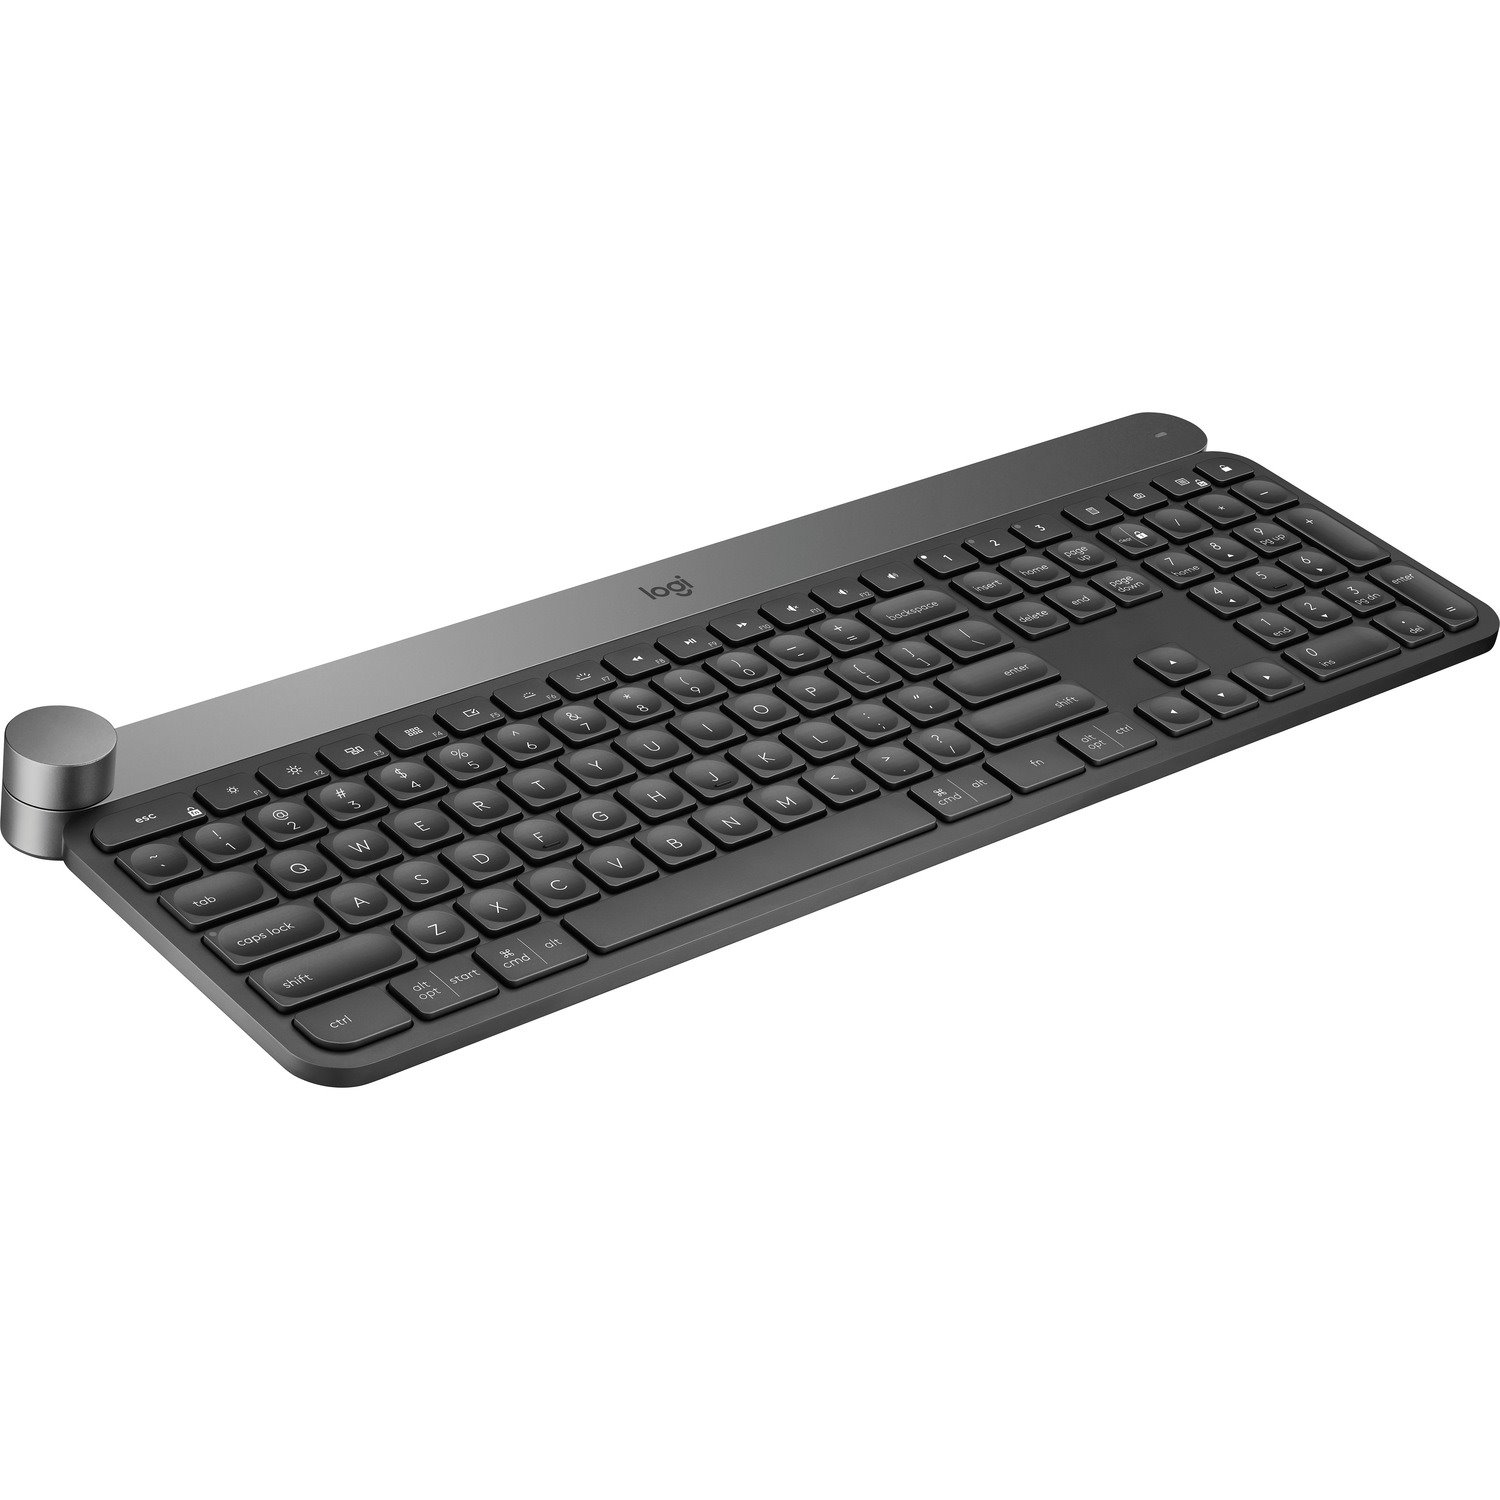 Logitech Craft Keyboard - Wireless Connectivity - USB Interface - Jog Dial - English (UK) - QWERTY Layout - Black